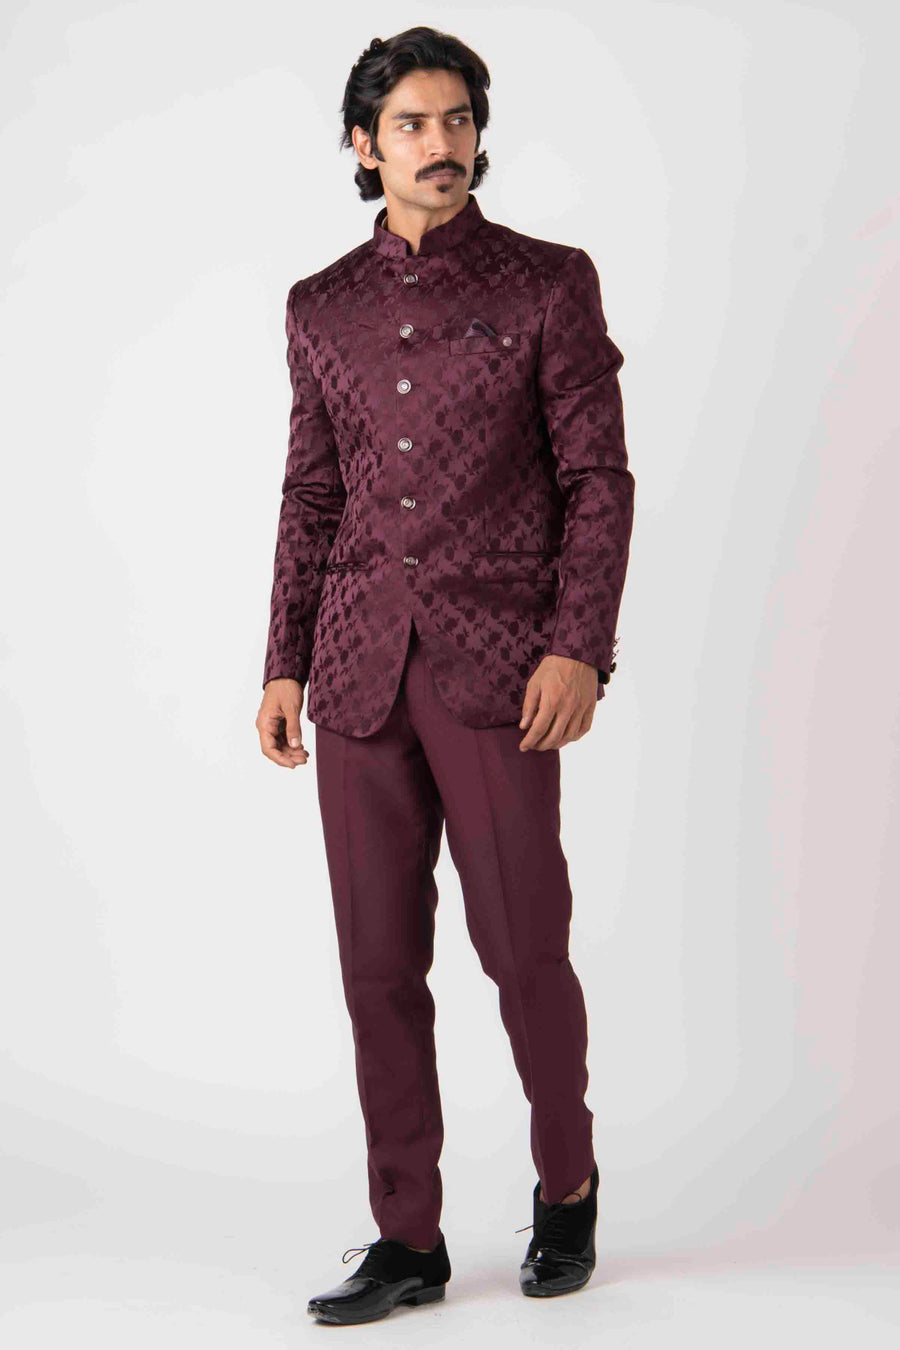 Buy Designer Jodhpuri Suit for Men - Premium Bandhgala Suit for Wedding |  Rohit Kamra – Page 3 – Rohit Kamra Jaipur